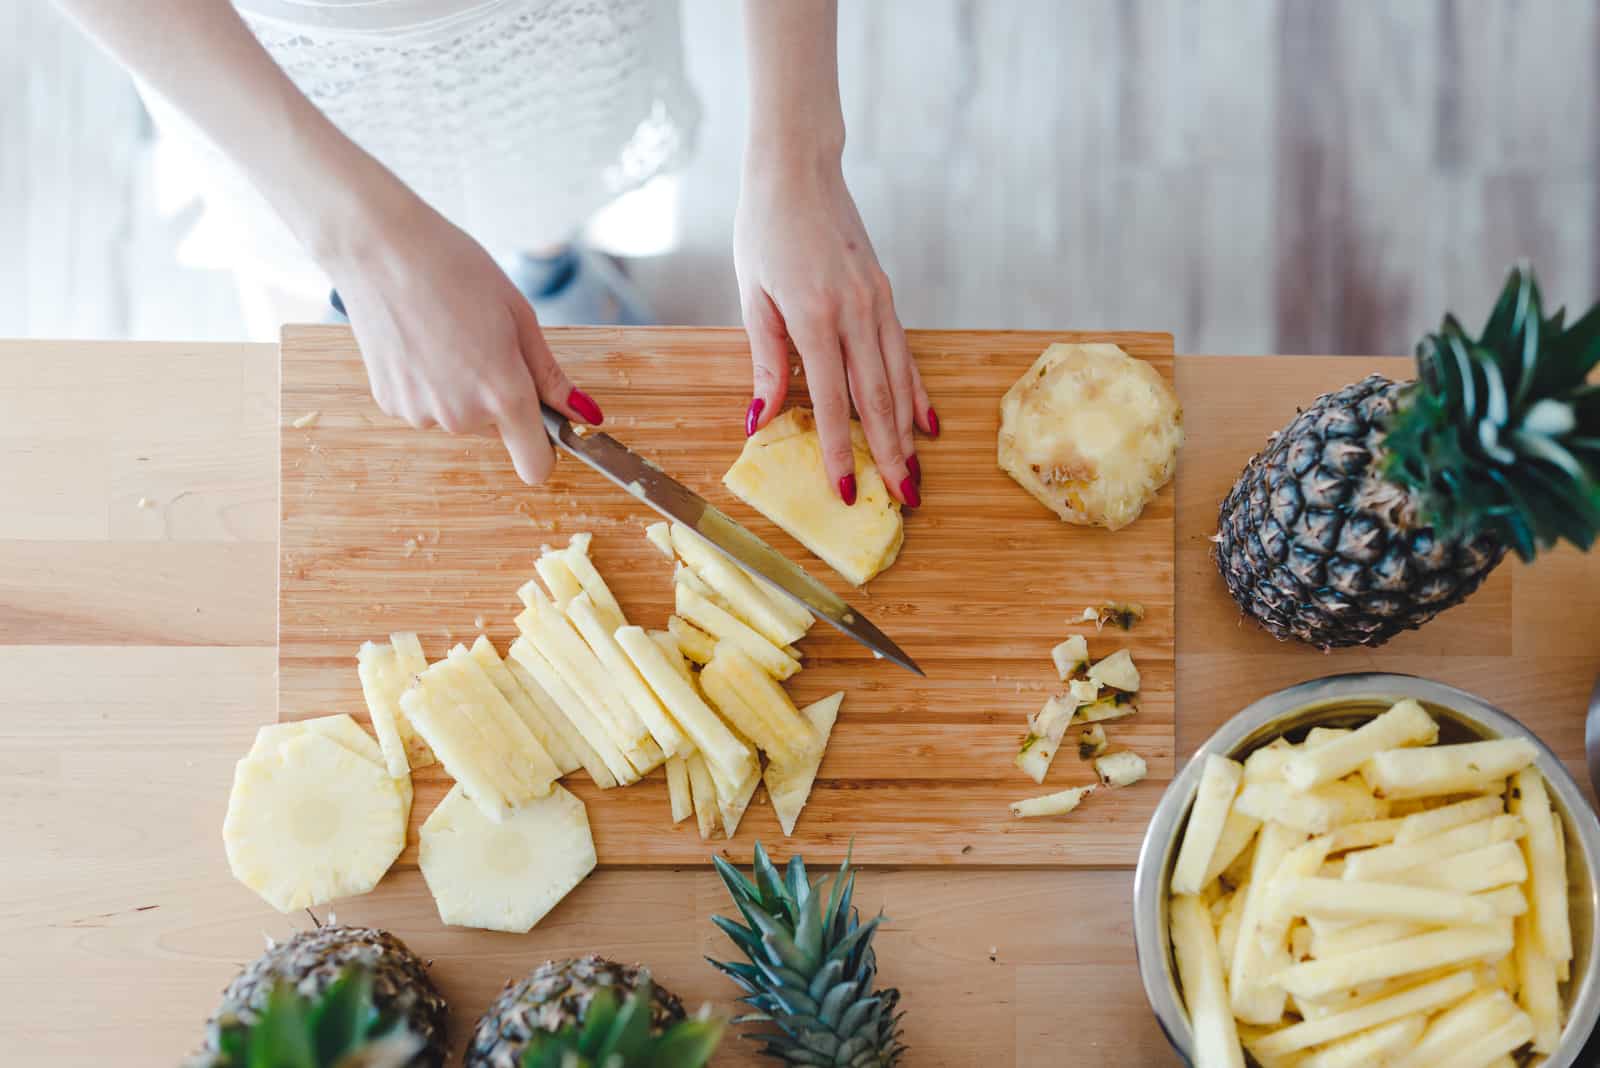 Frau geschnittene Ananas mit einem Messer auf dem Küchentisch